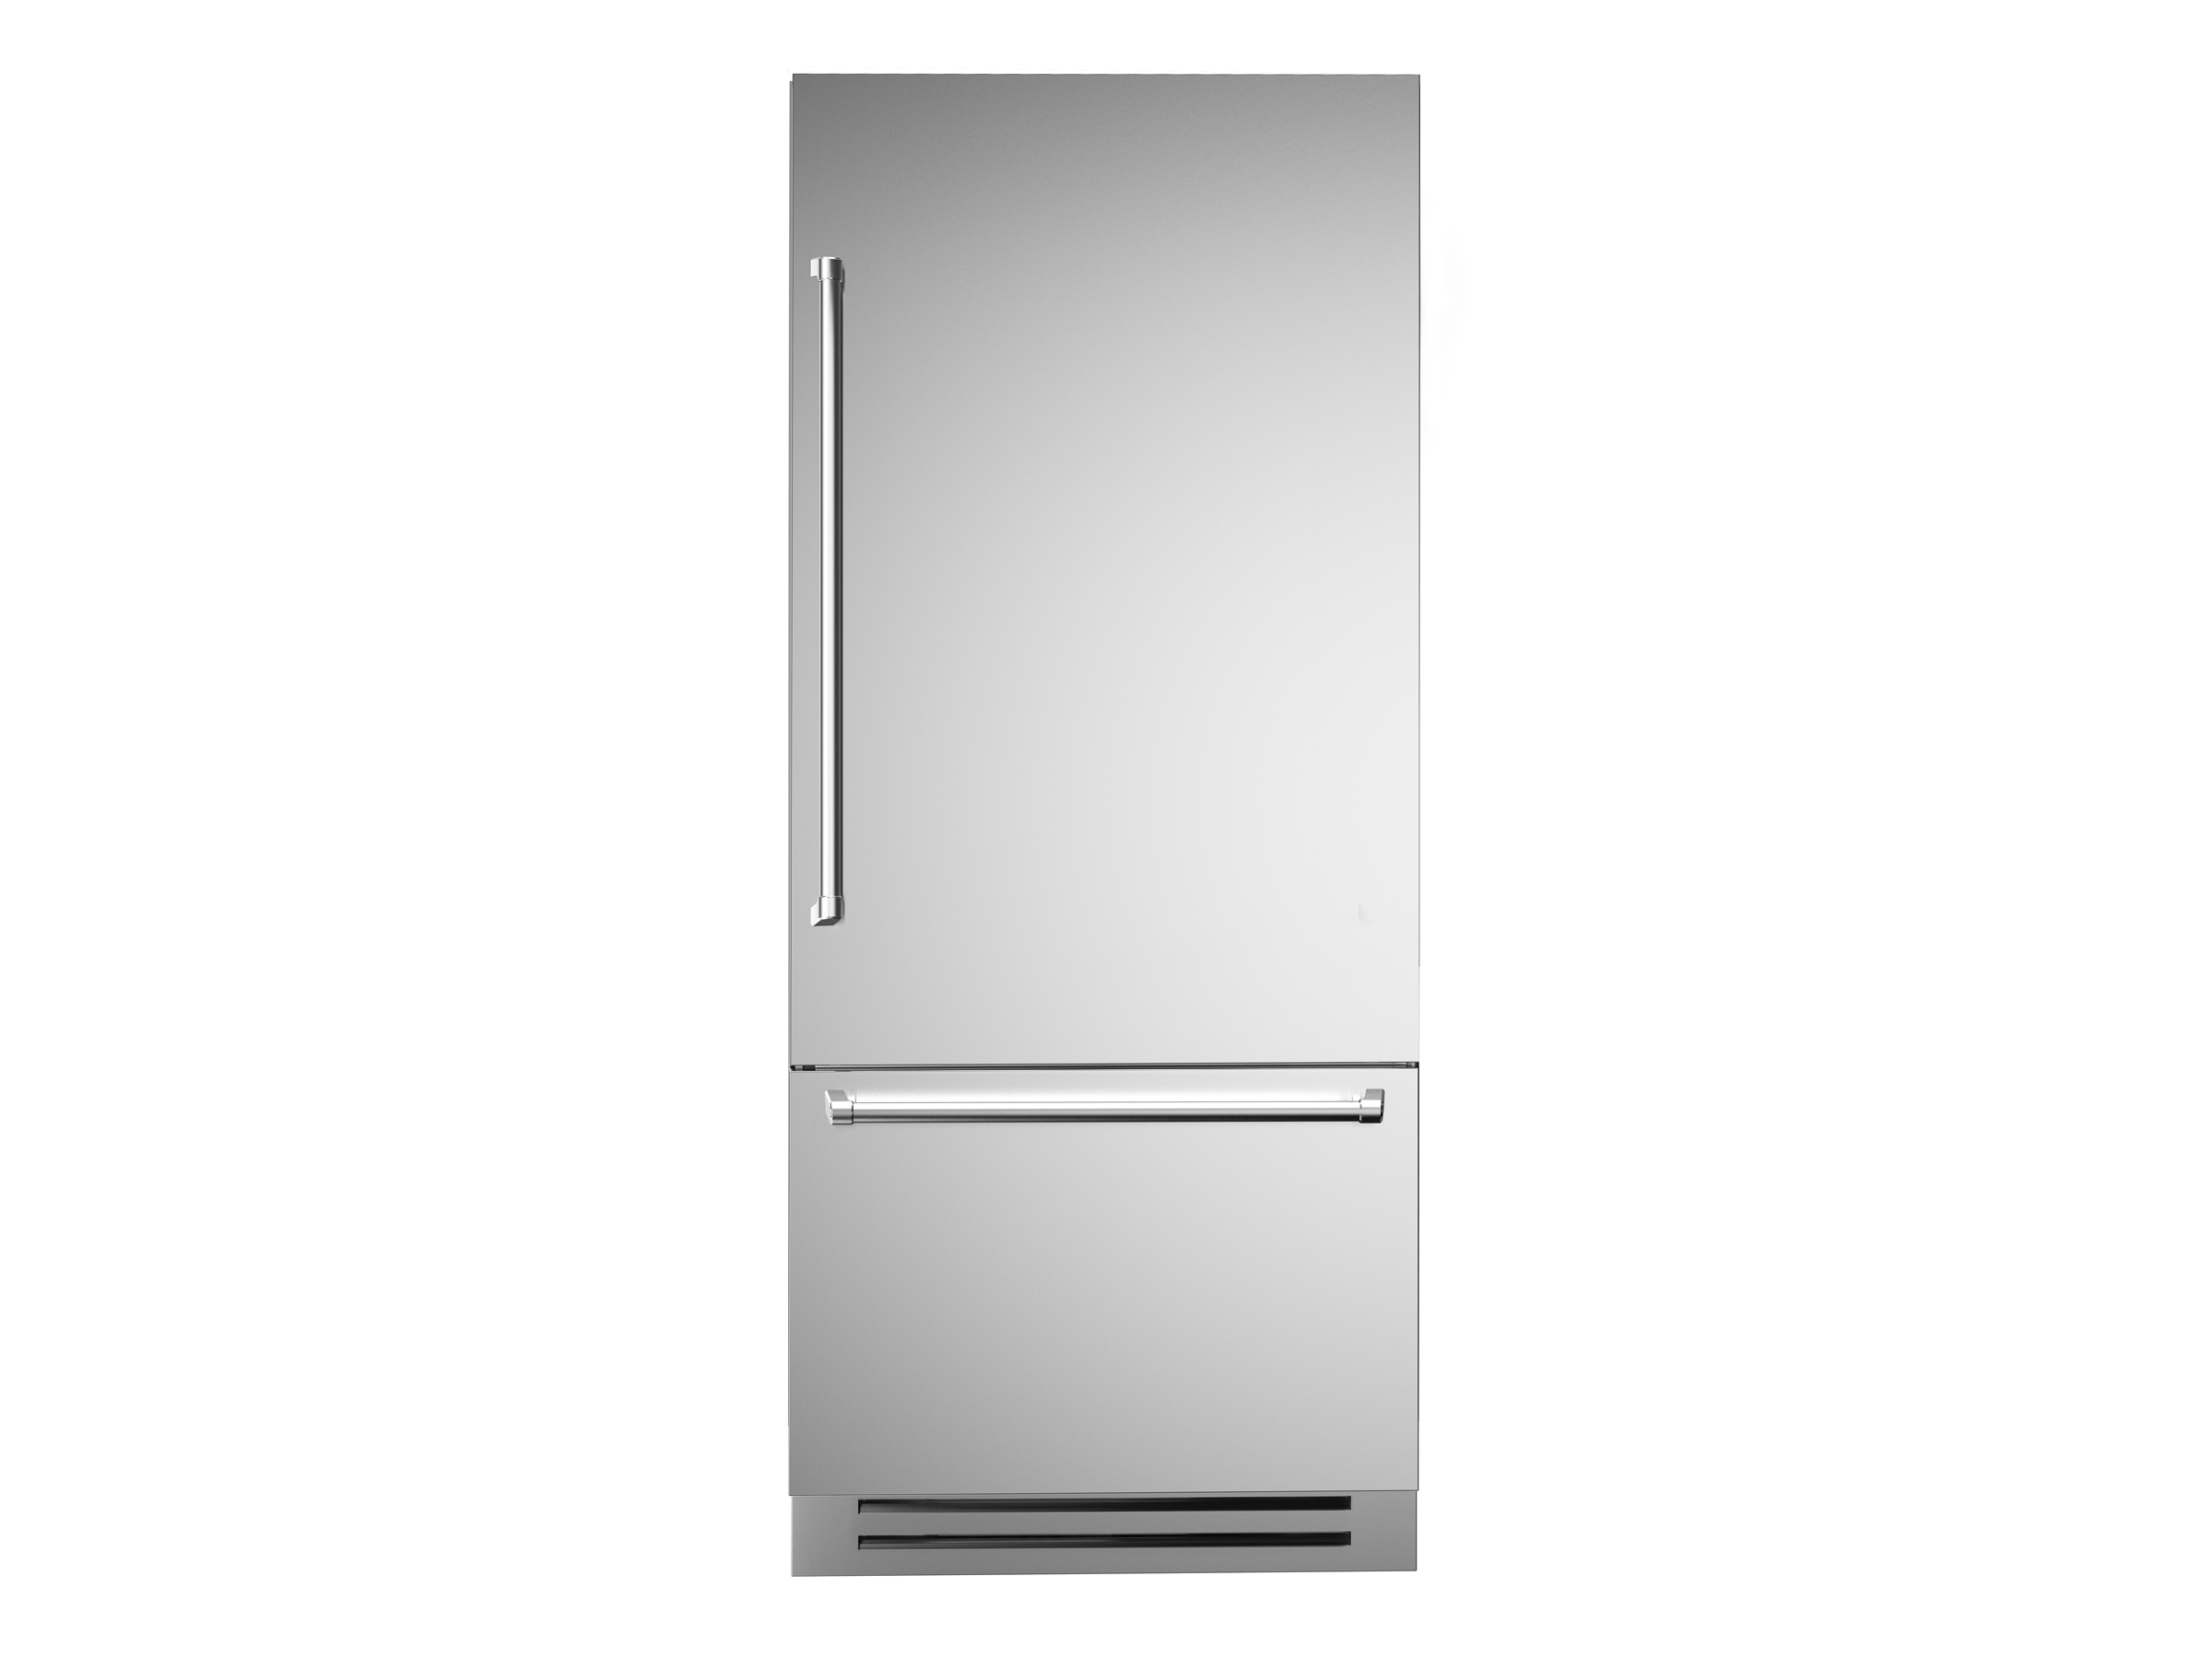 Trouwens Meevoelen verkoopplan 90cm Top Line koelkast roestvrijstalen deur | Bertazzoni